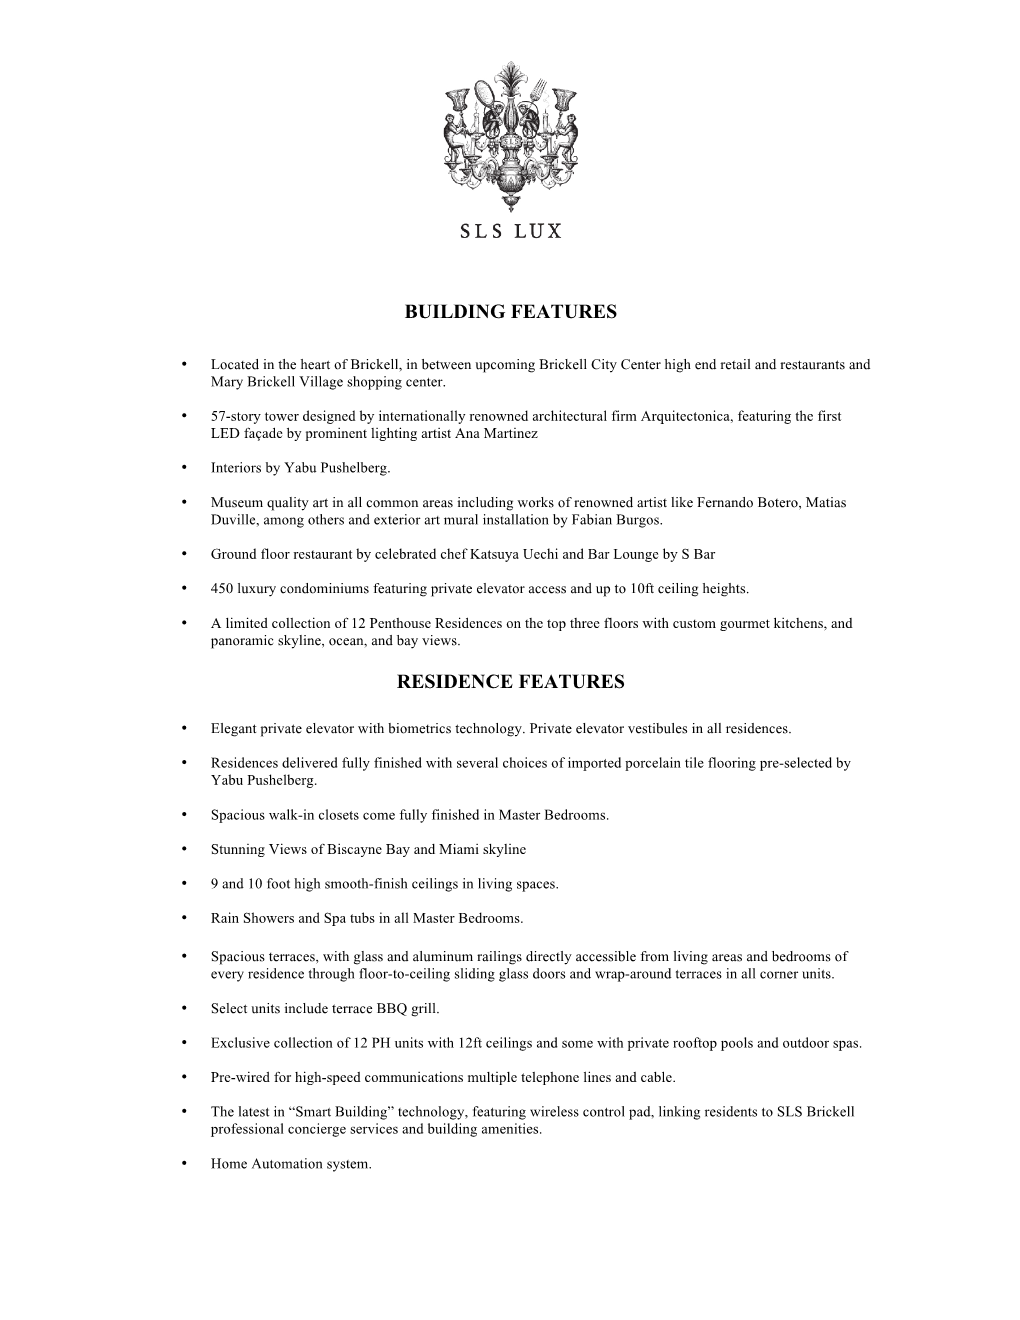 SLS Lux Brickell Condos Fact Sheet